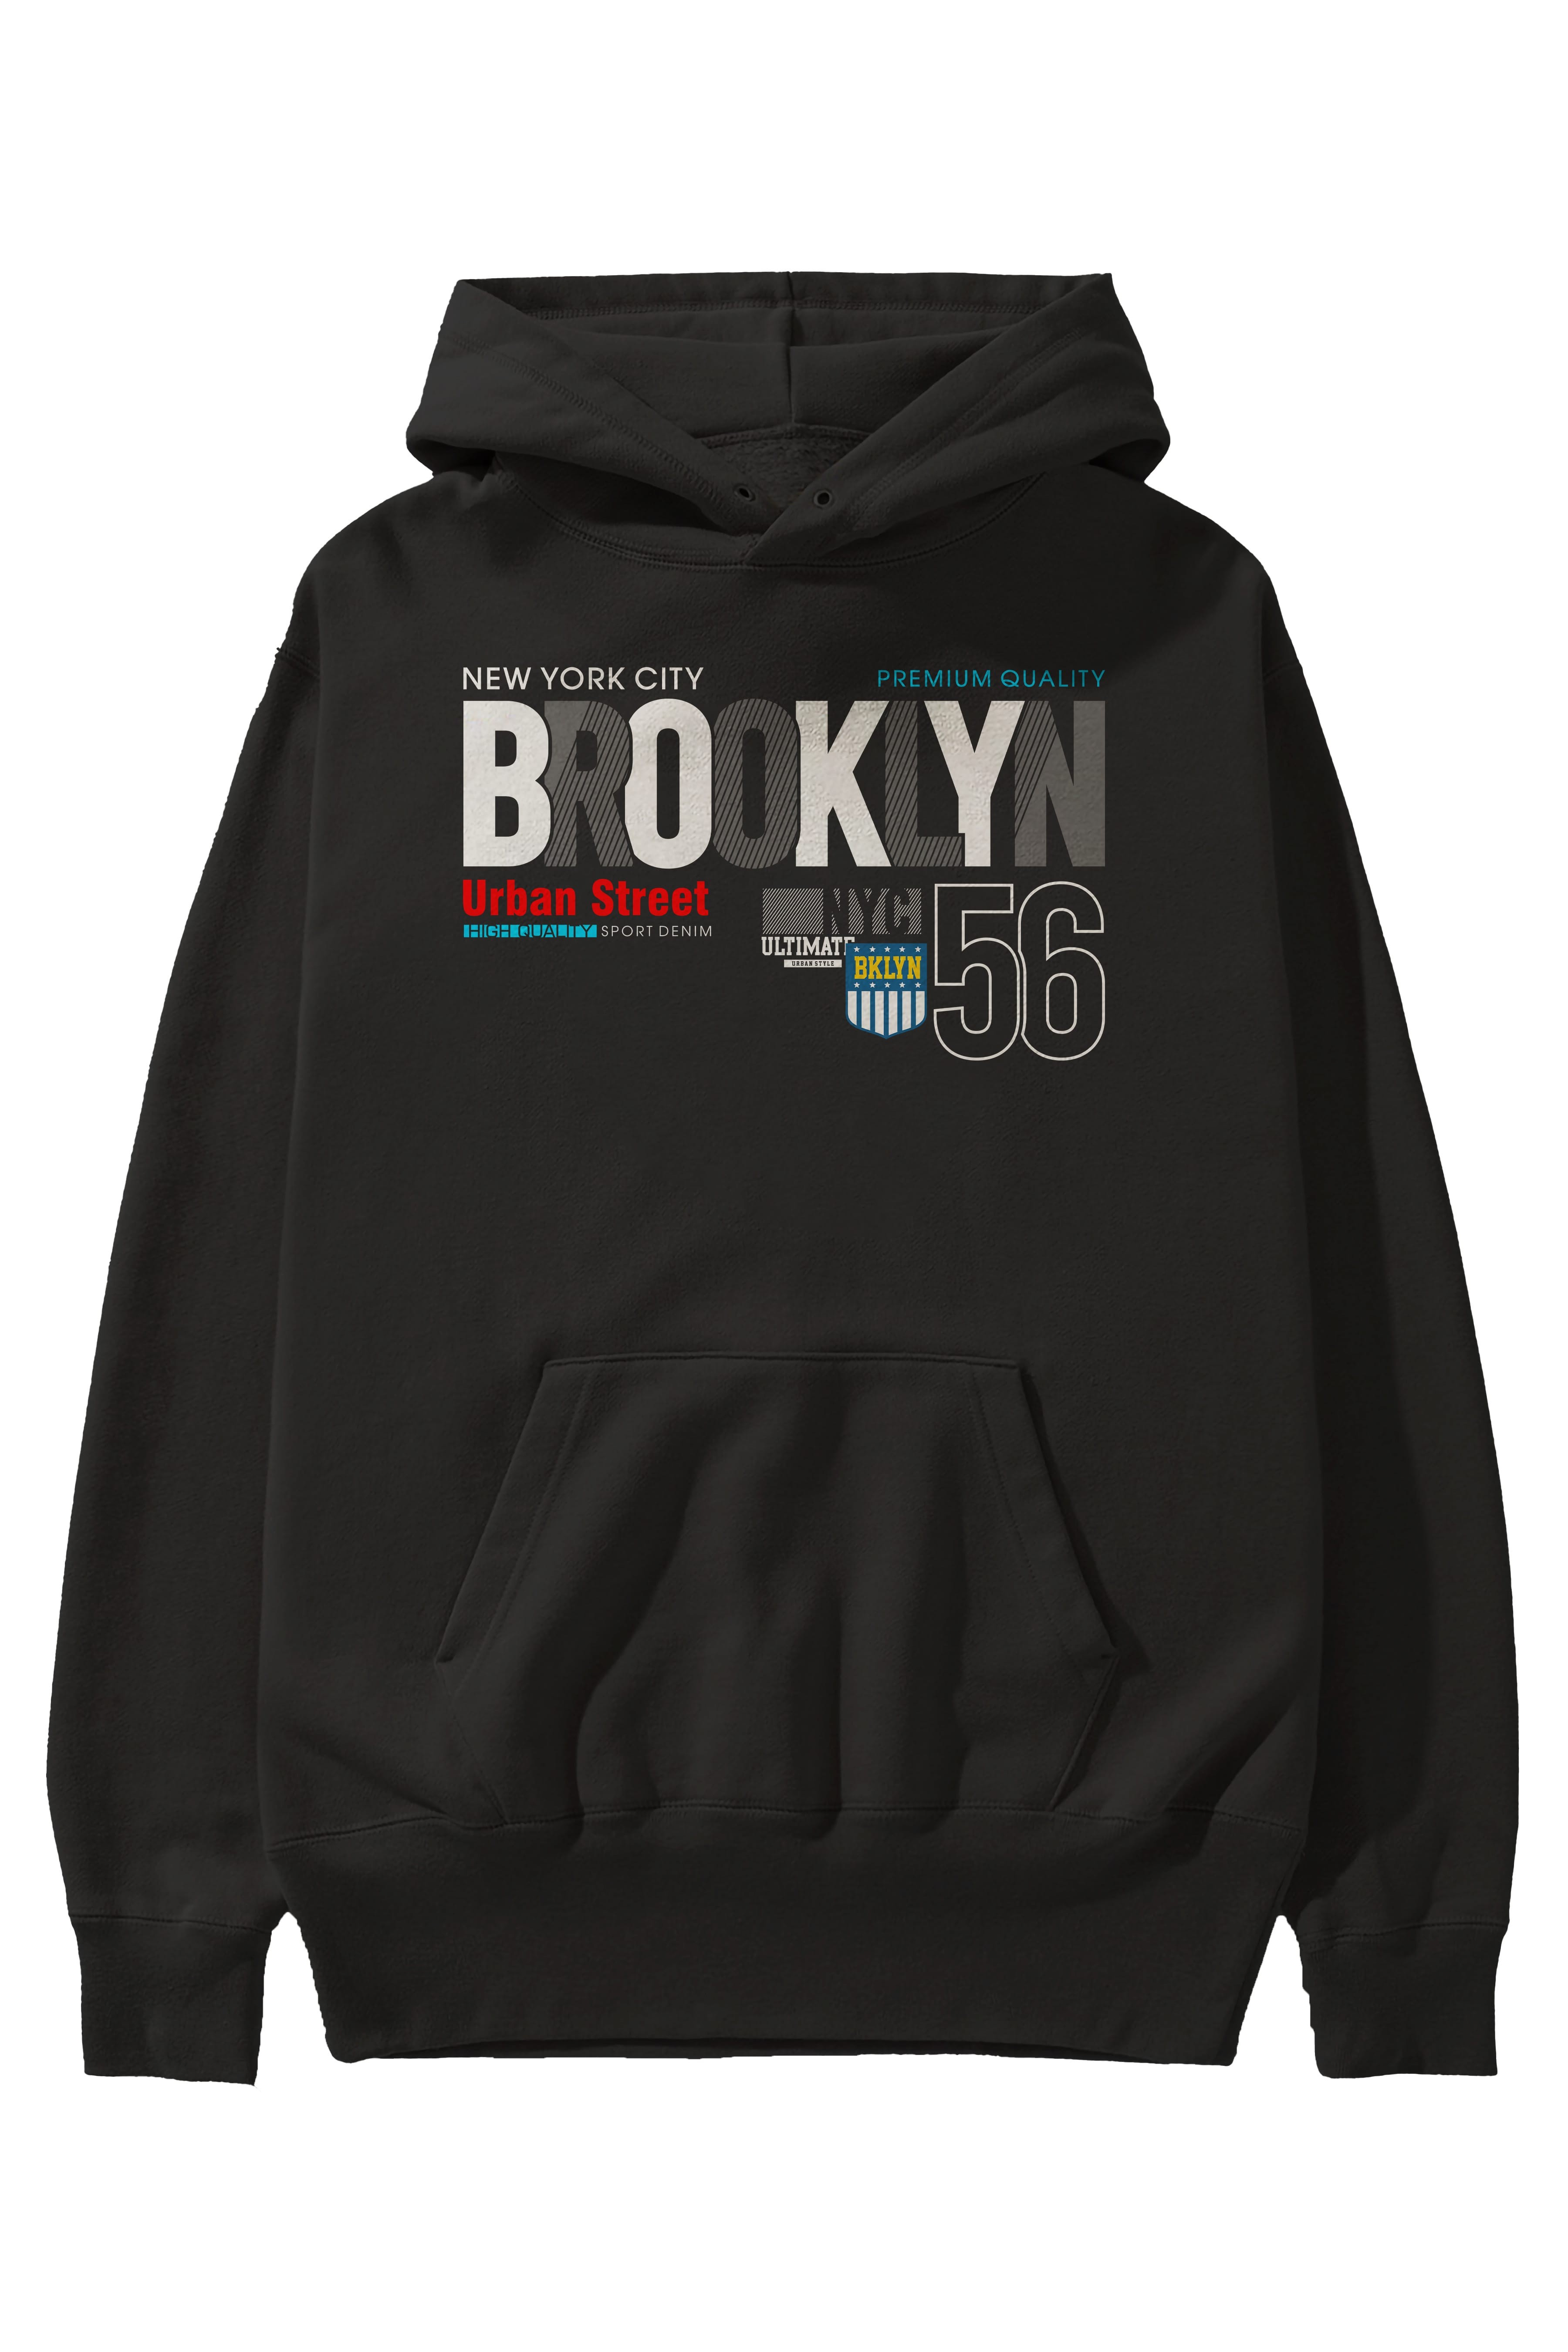 Brooklyn 56 Ön Baskılı Oversize Hoodie Kapüşonlu Sweatshirt Erkek Kadın Unisex